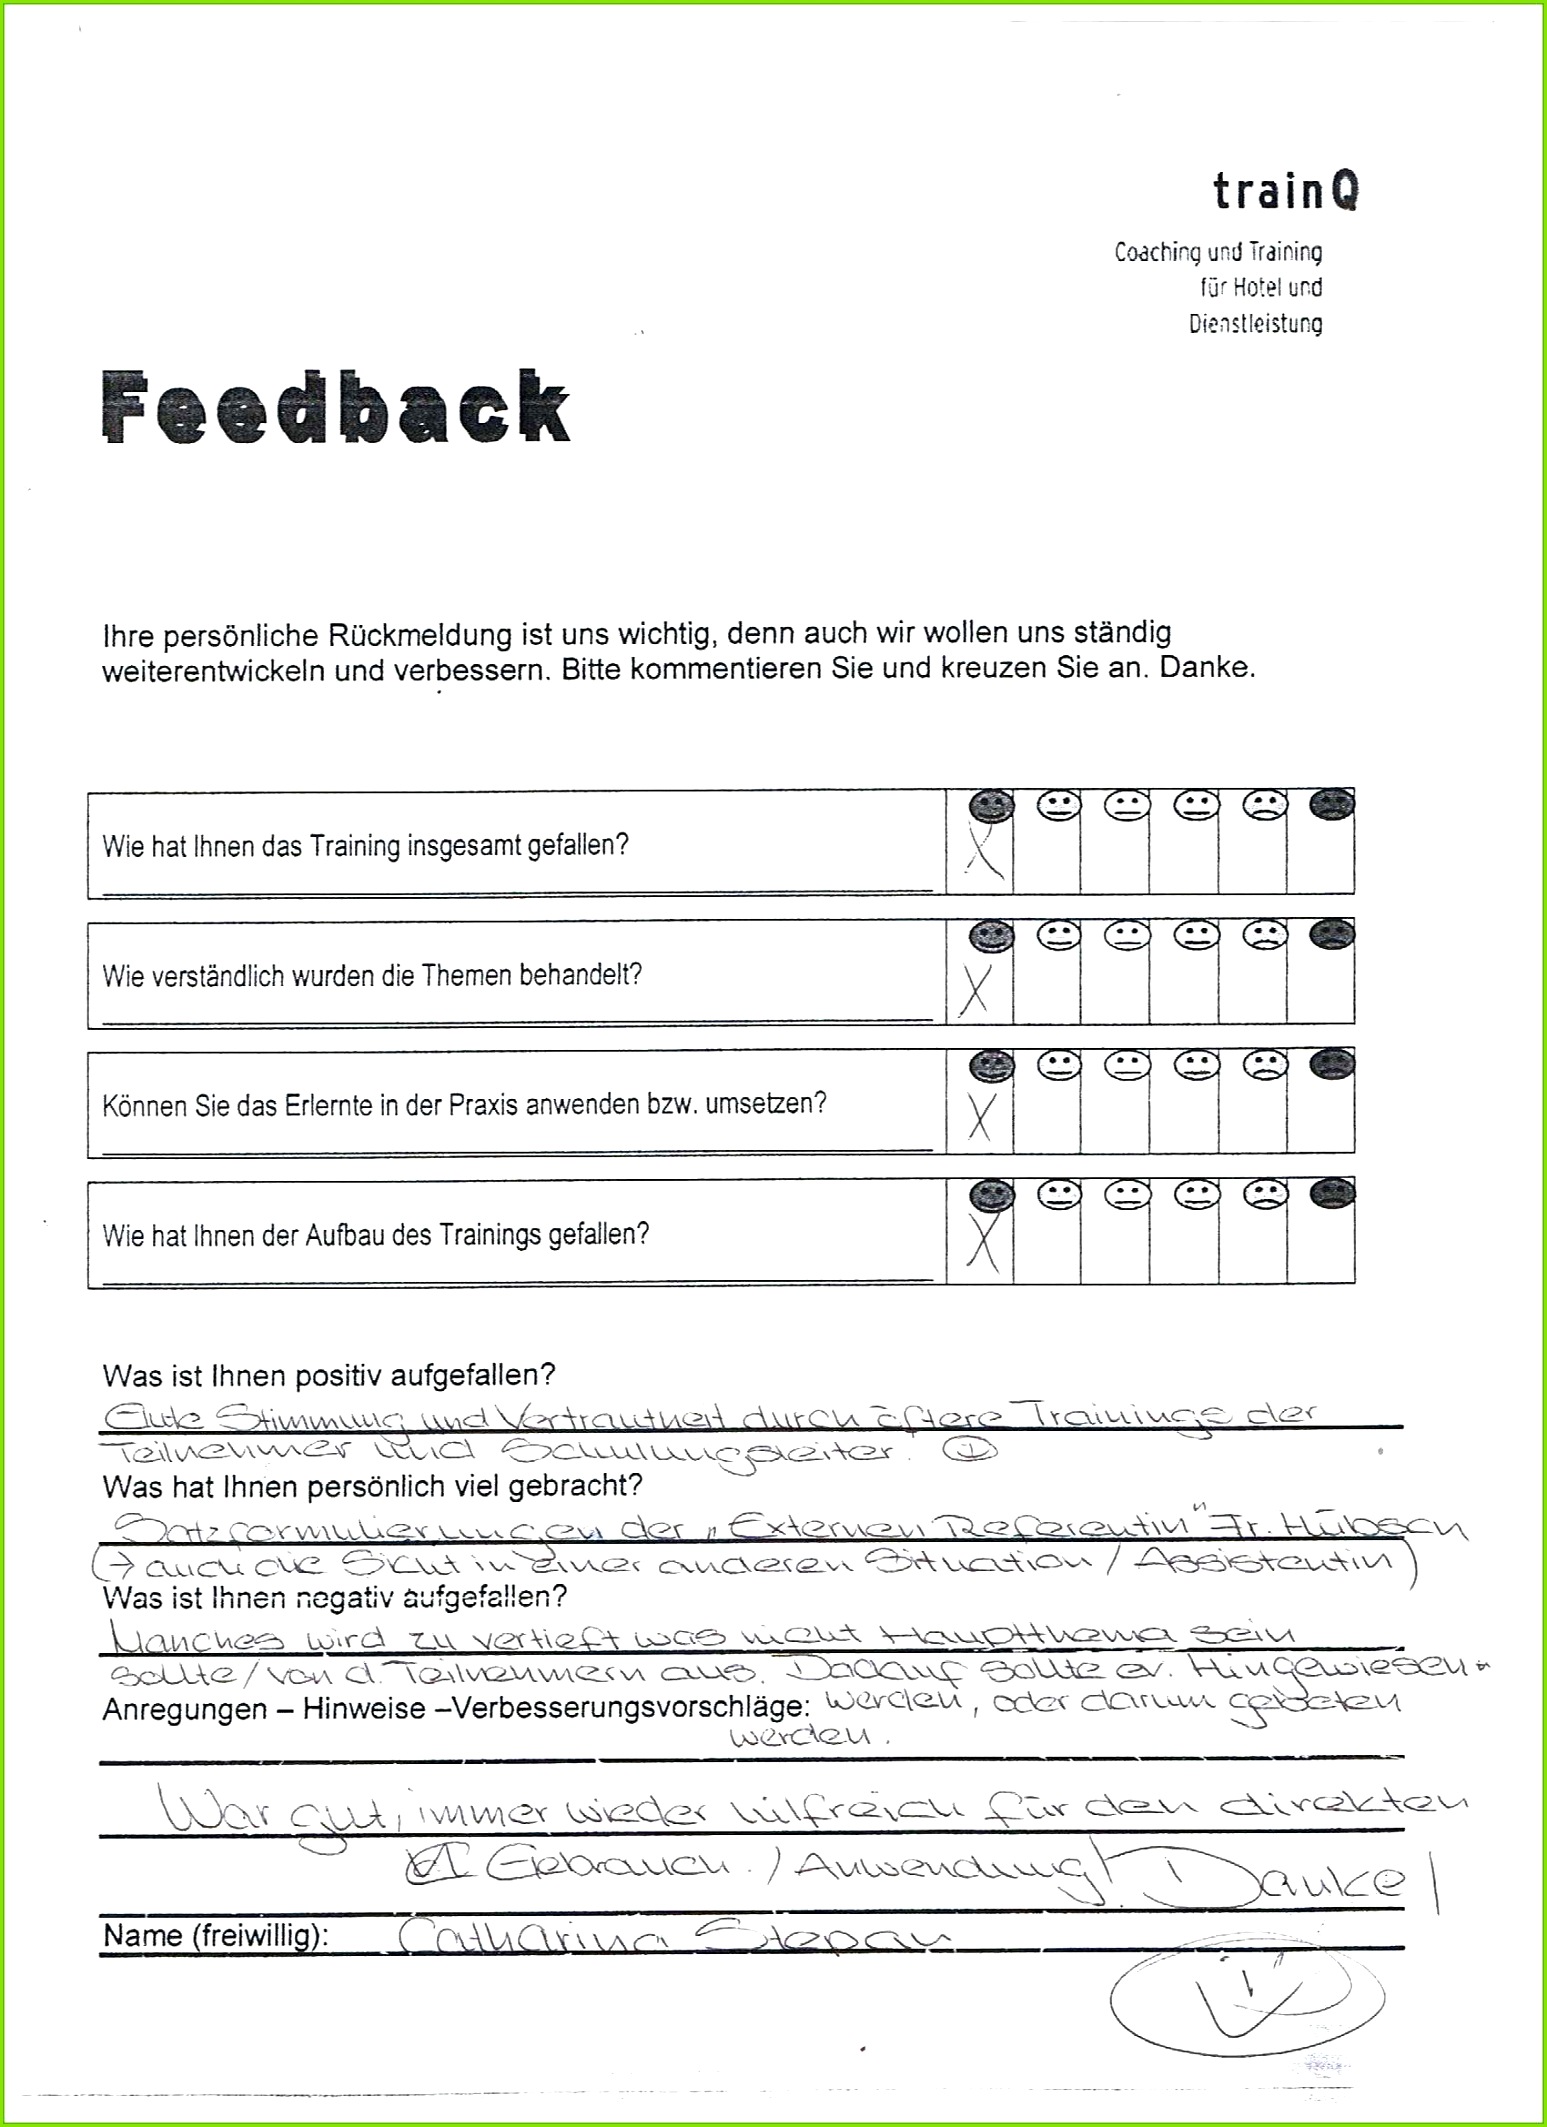 ausgezeichnet feedbackbogen vorlage seminar fabelhaft stimmen trainq von seminar feedback vorlage